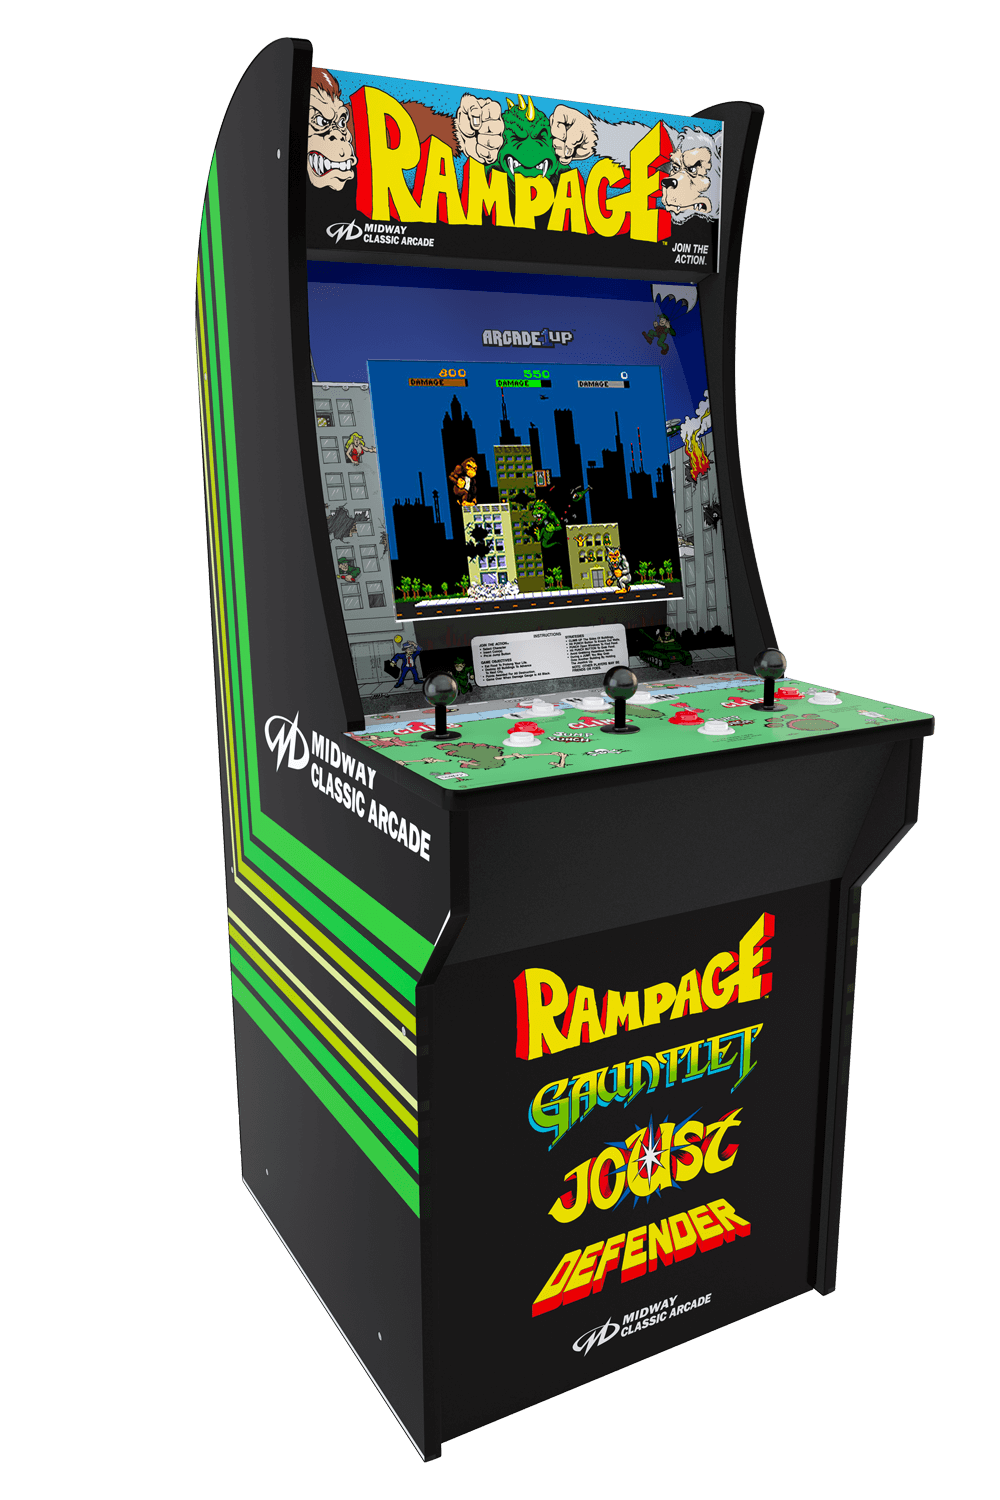 Rampage Arcade Cabinet Arcade1up